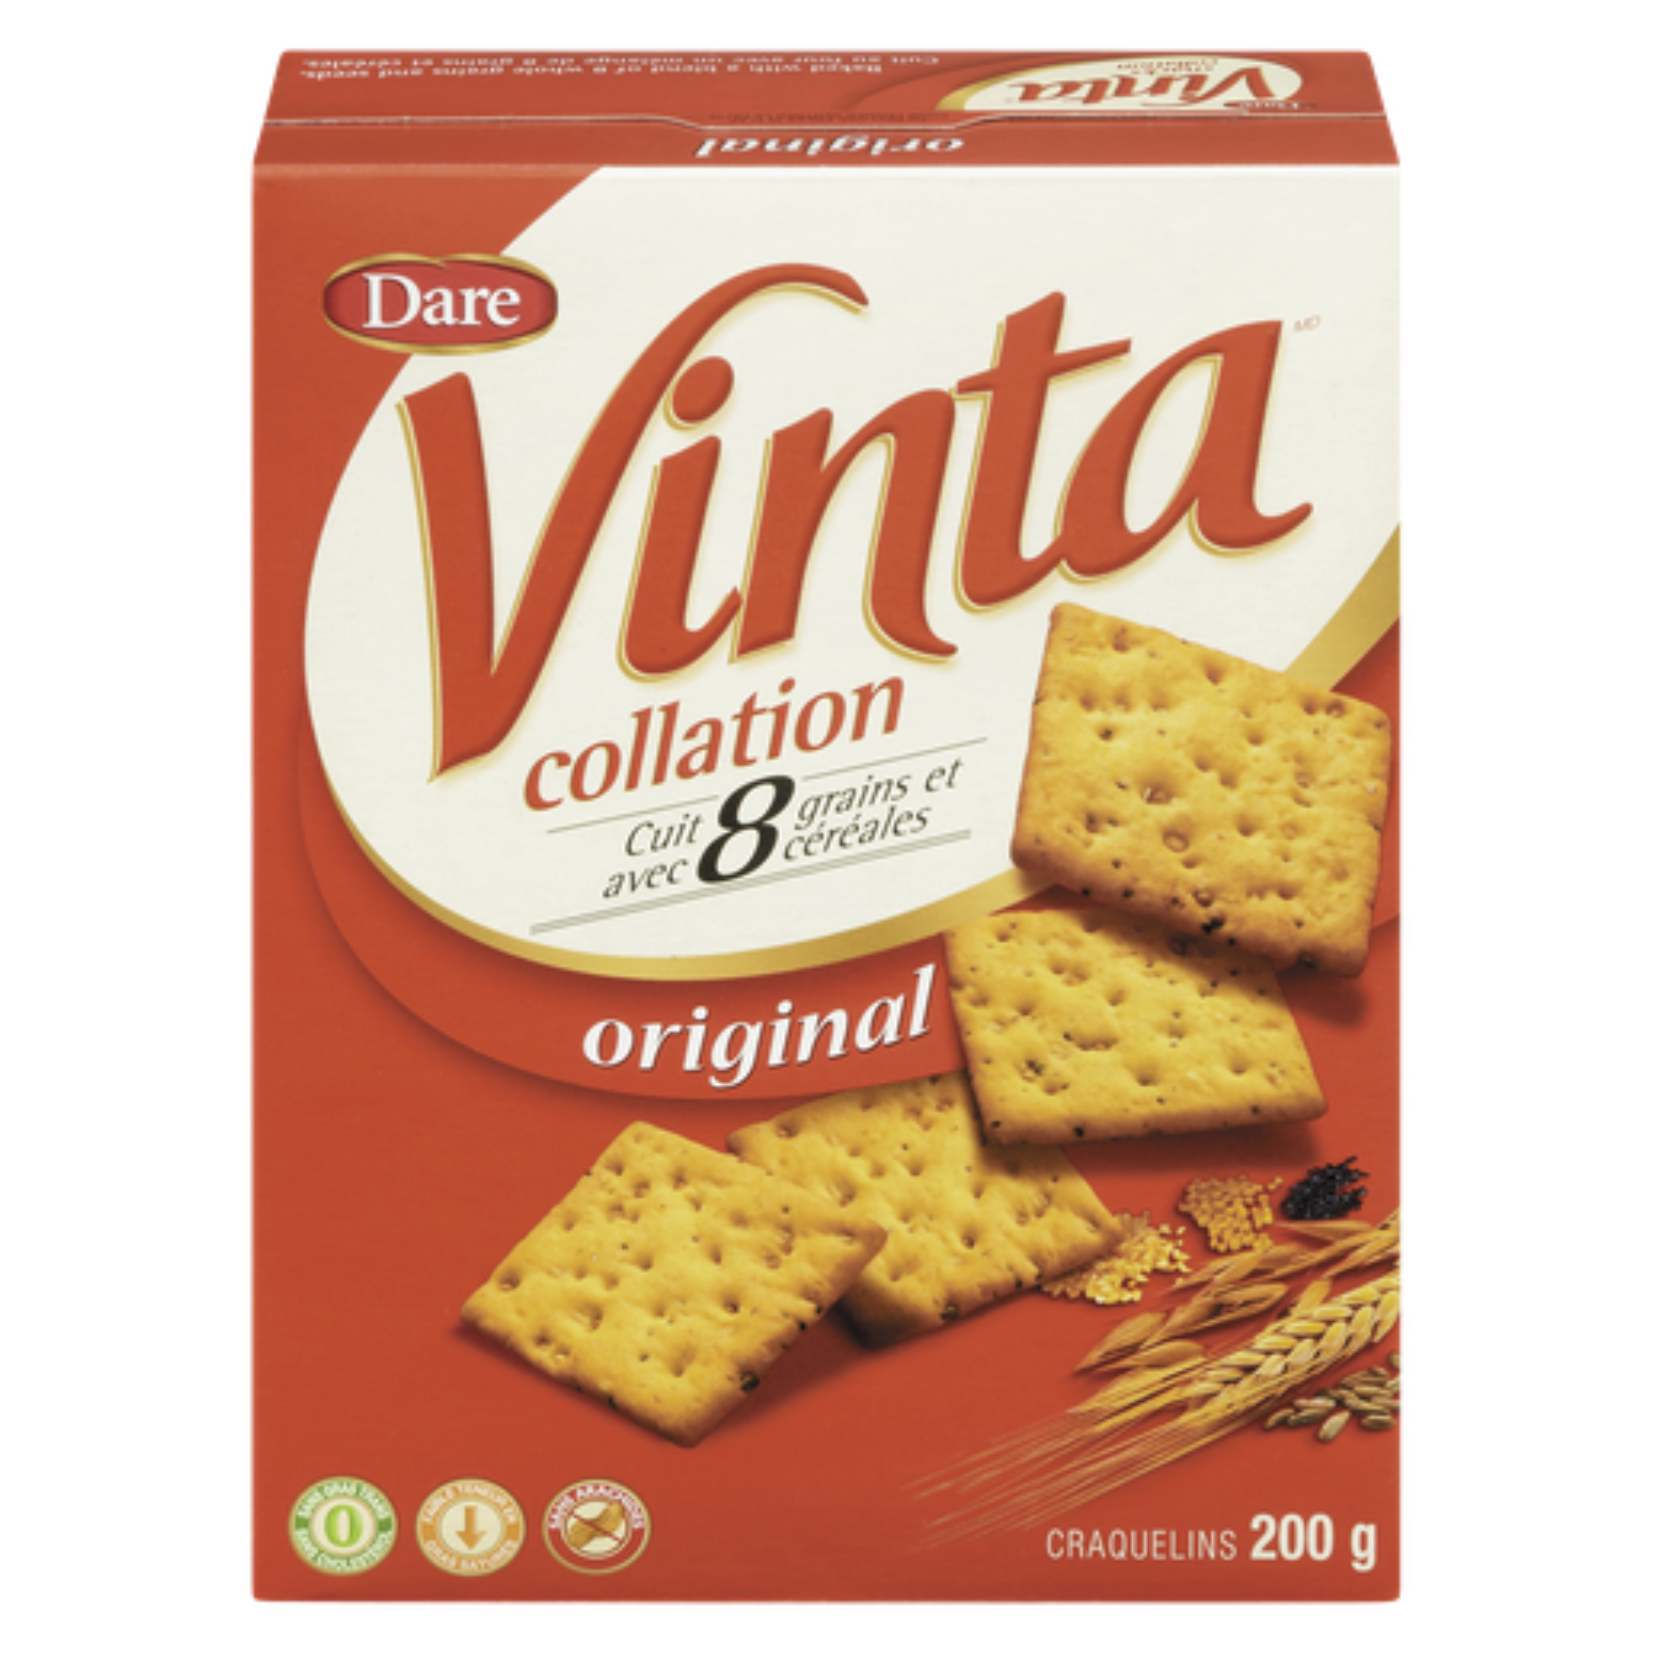 Dare Vinta Original Snack Crackers 200g